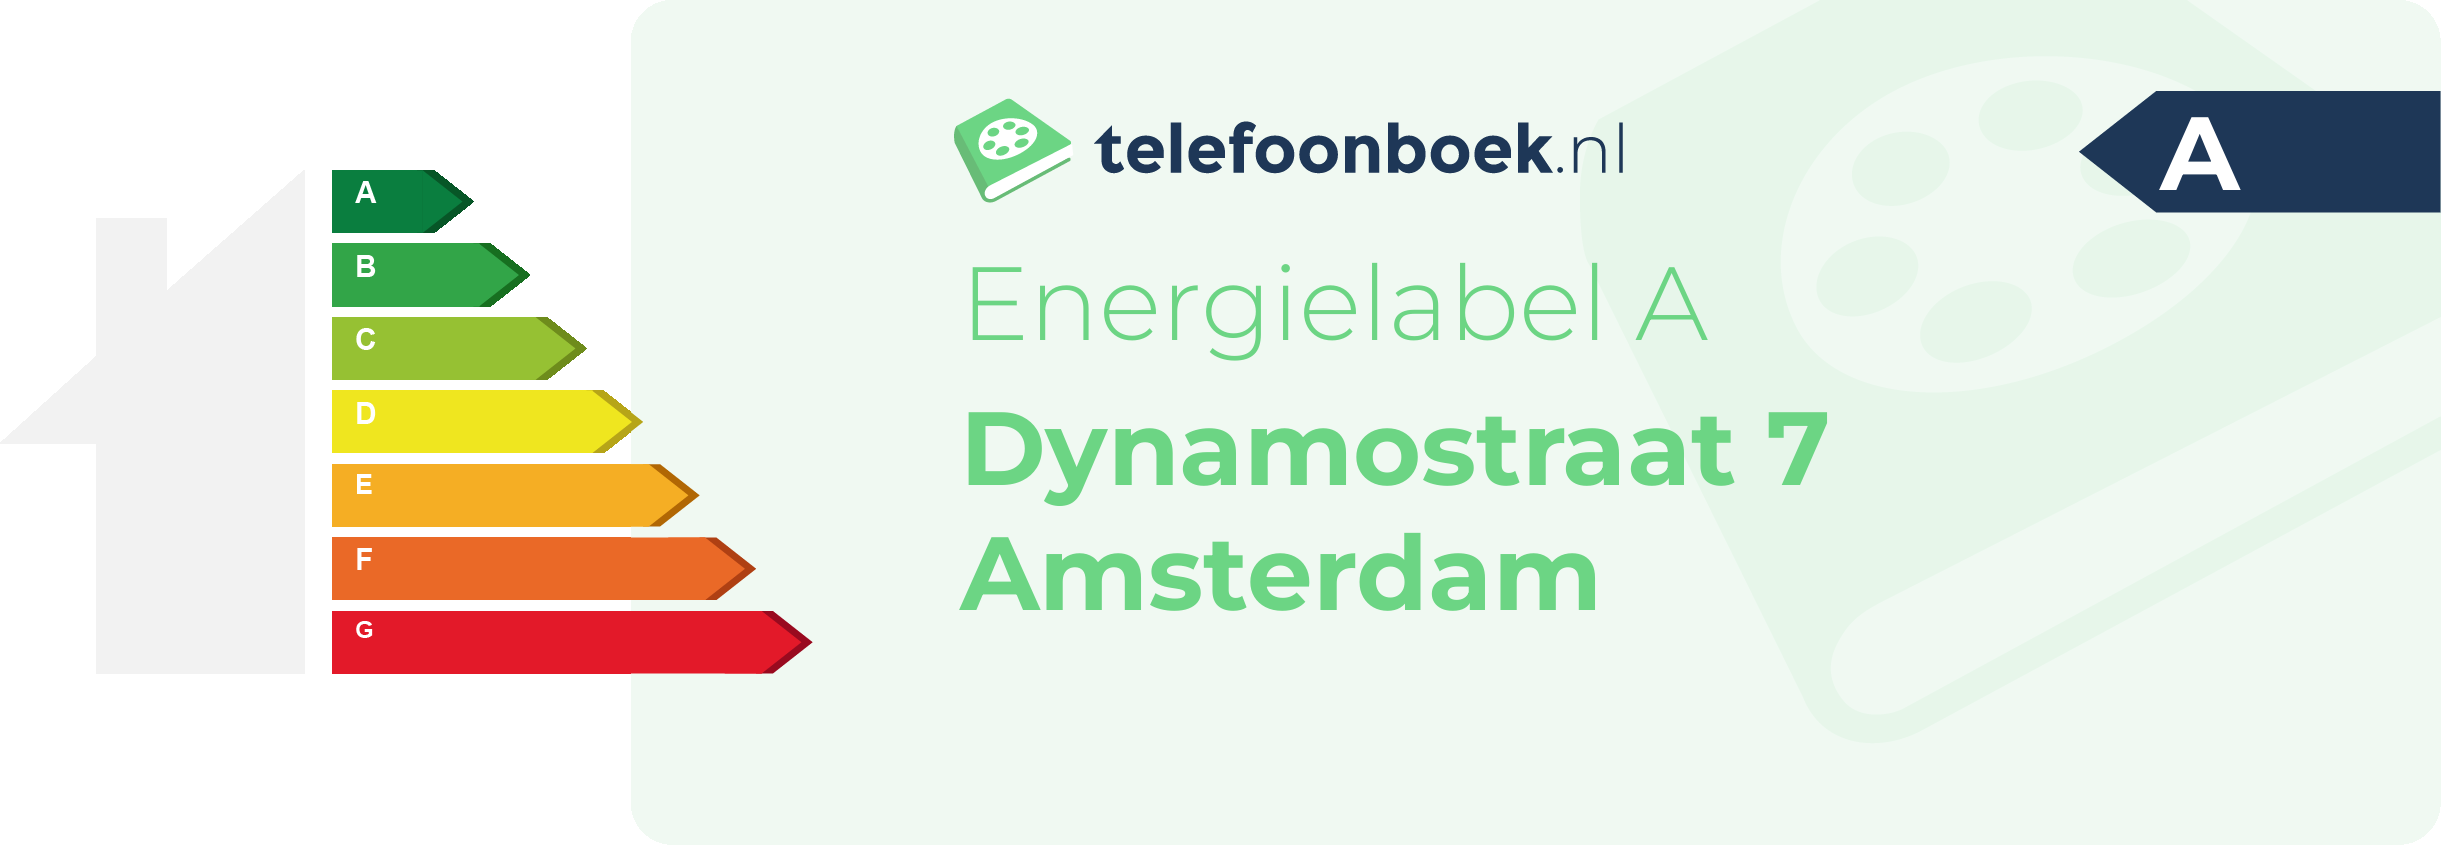 Energielabel Dynamostraat 7 Amsterdam